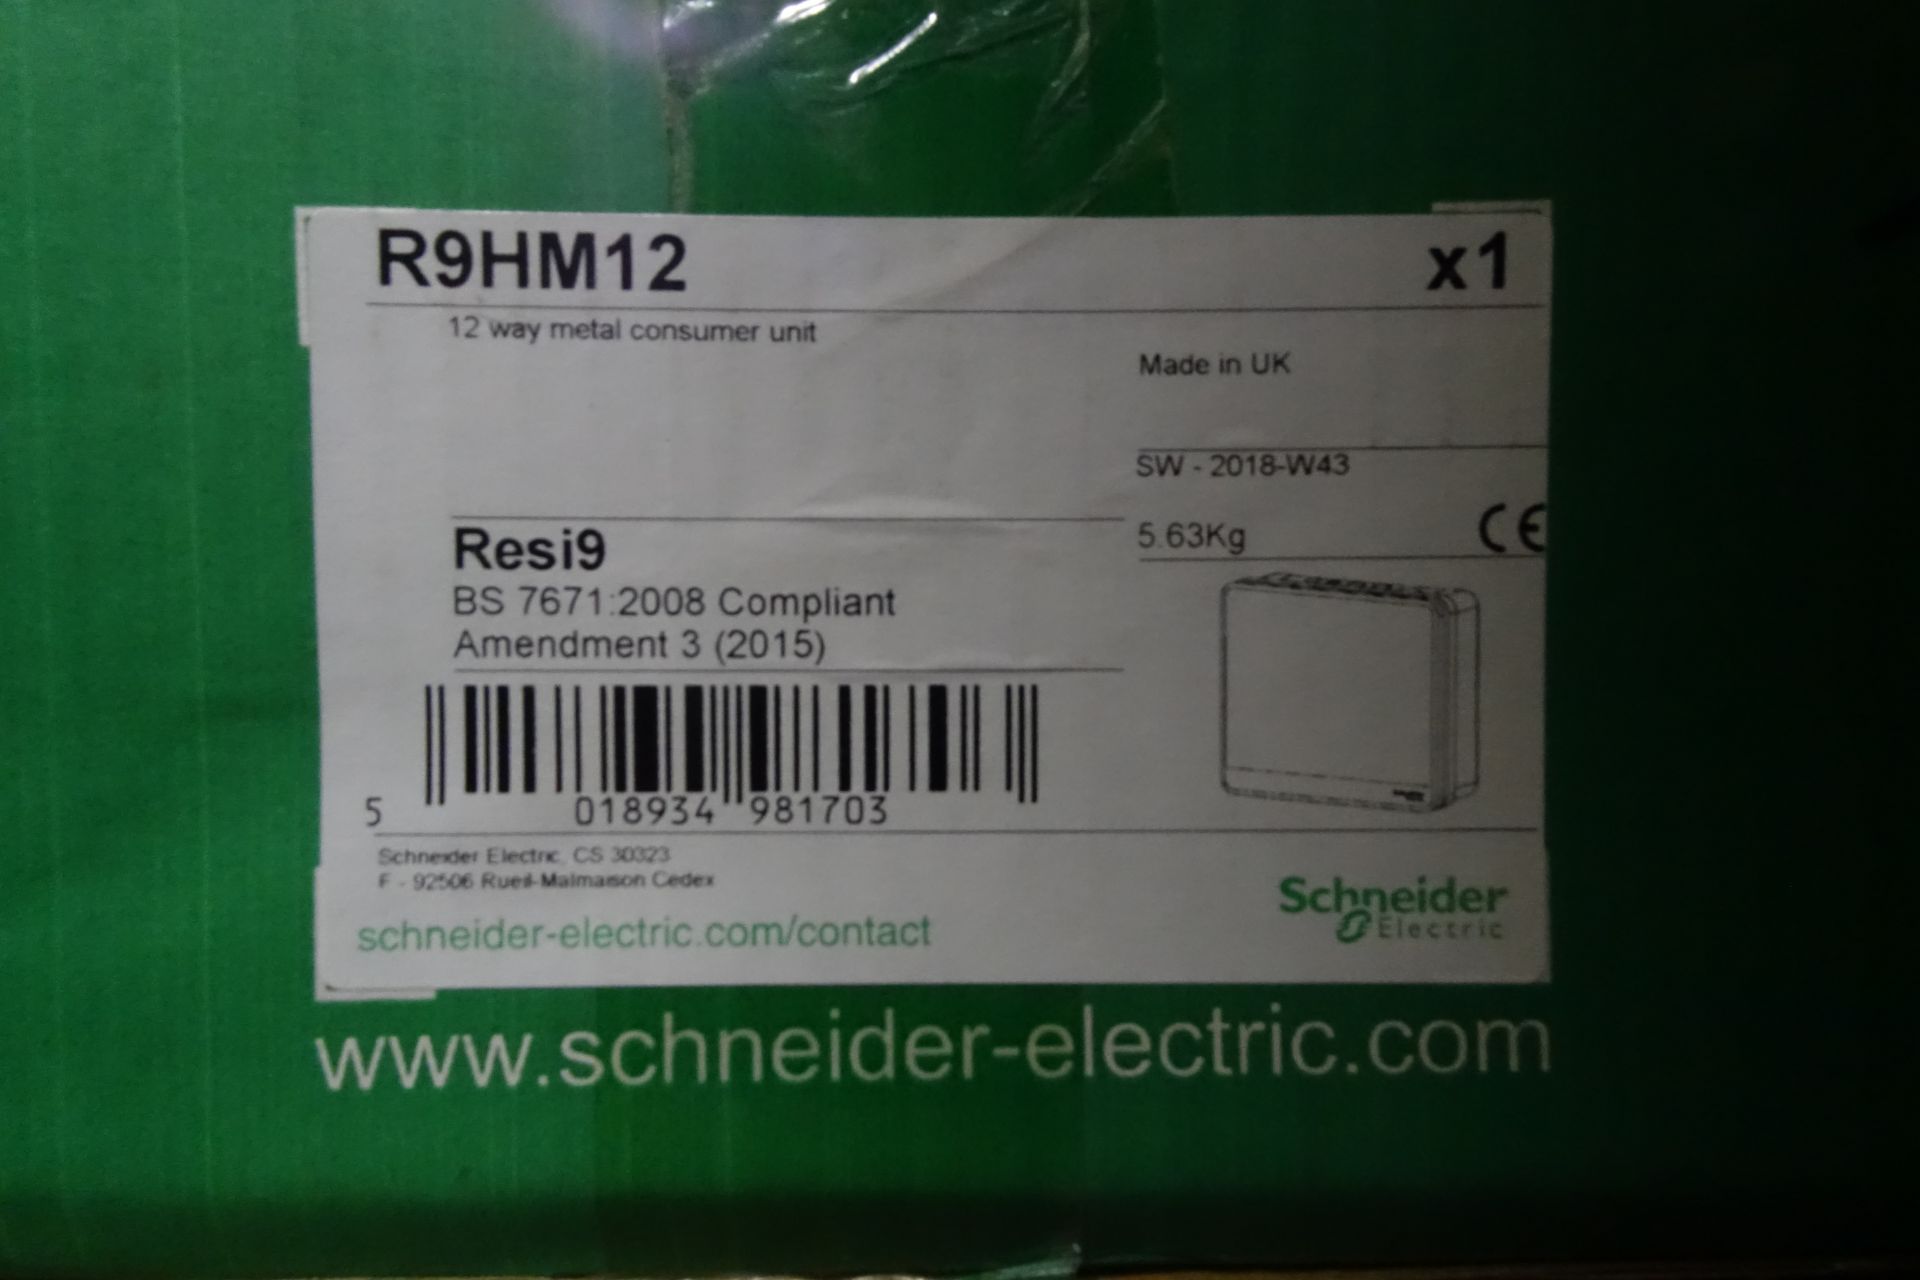 6 x SCHNEIDER R9HM12 12 Way Metal Consumer Unit's